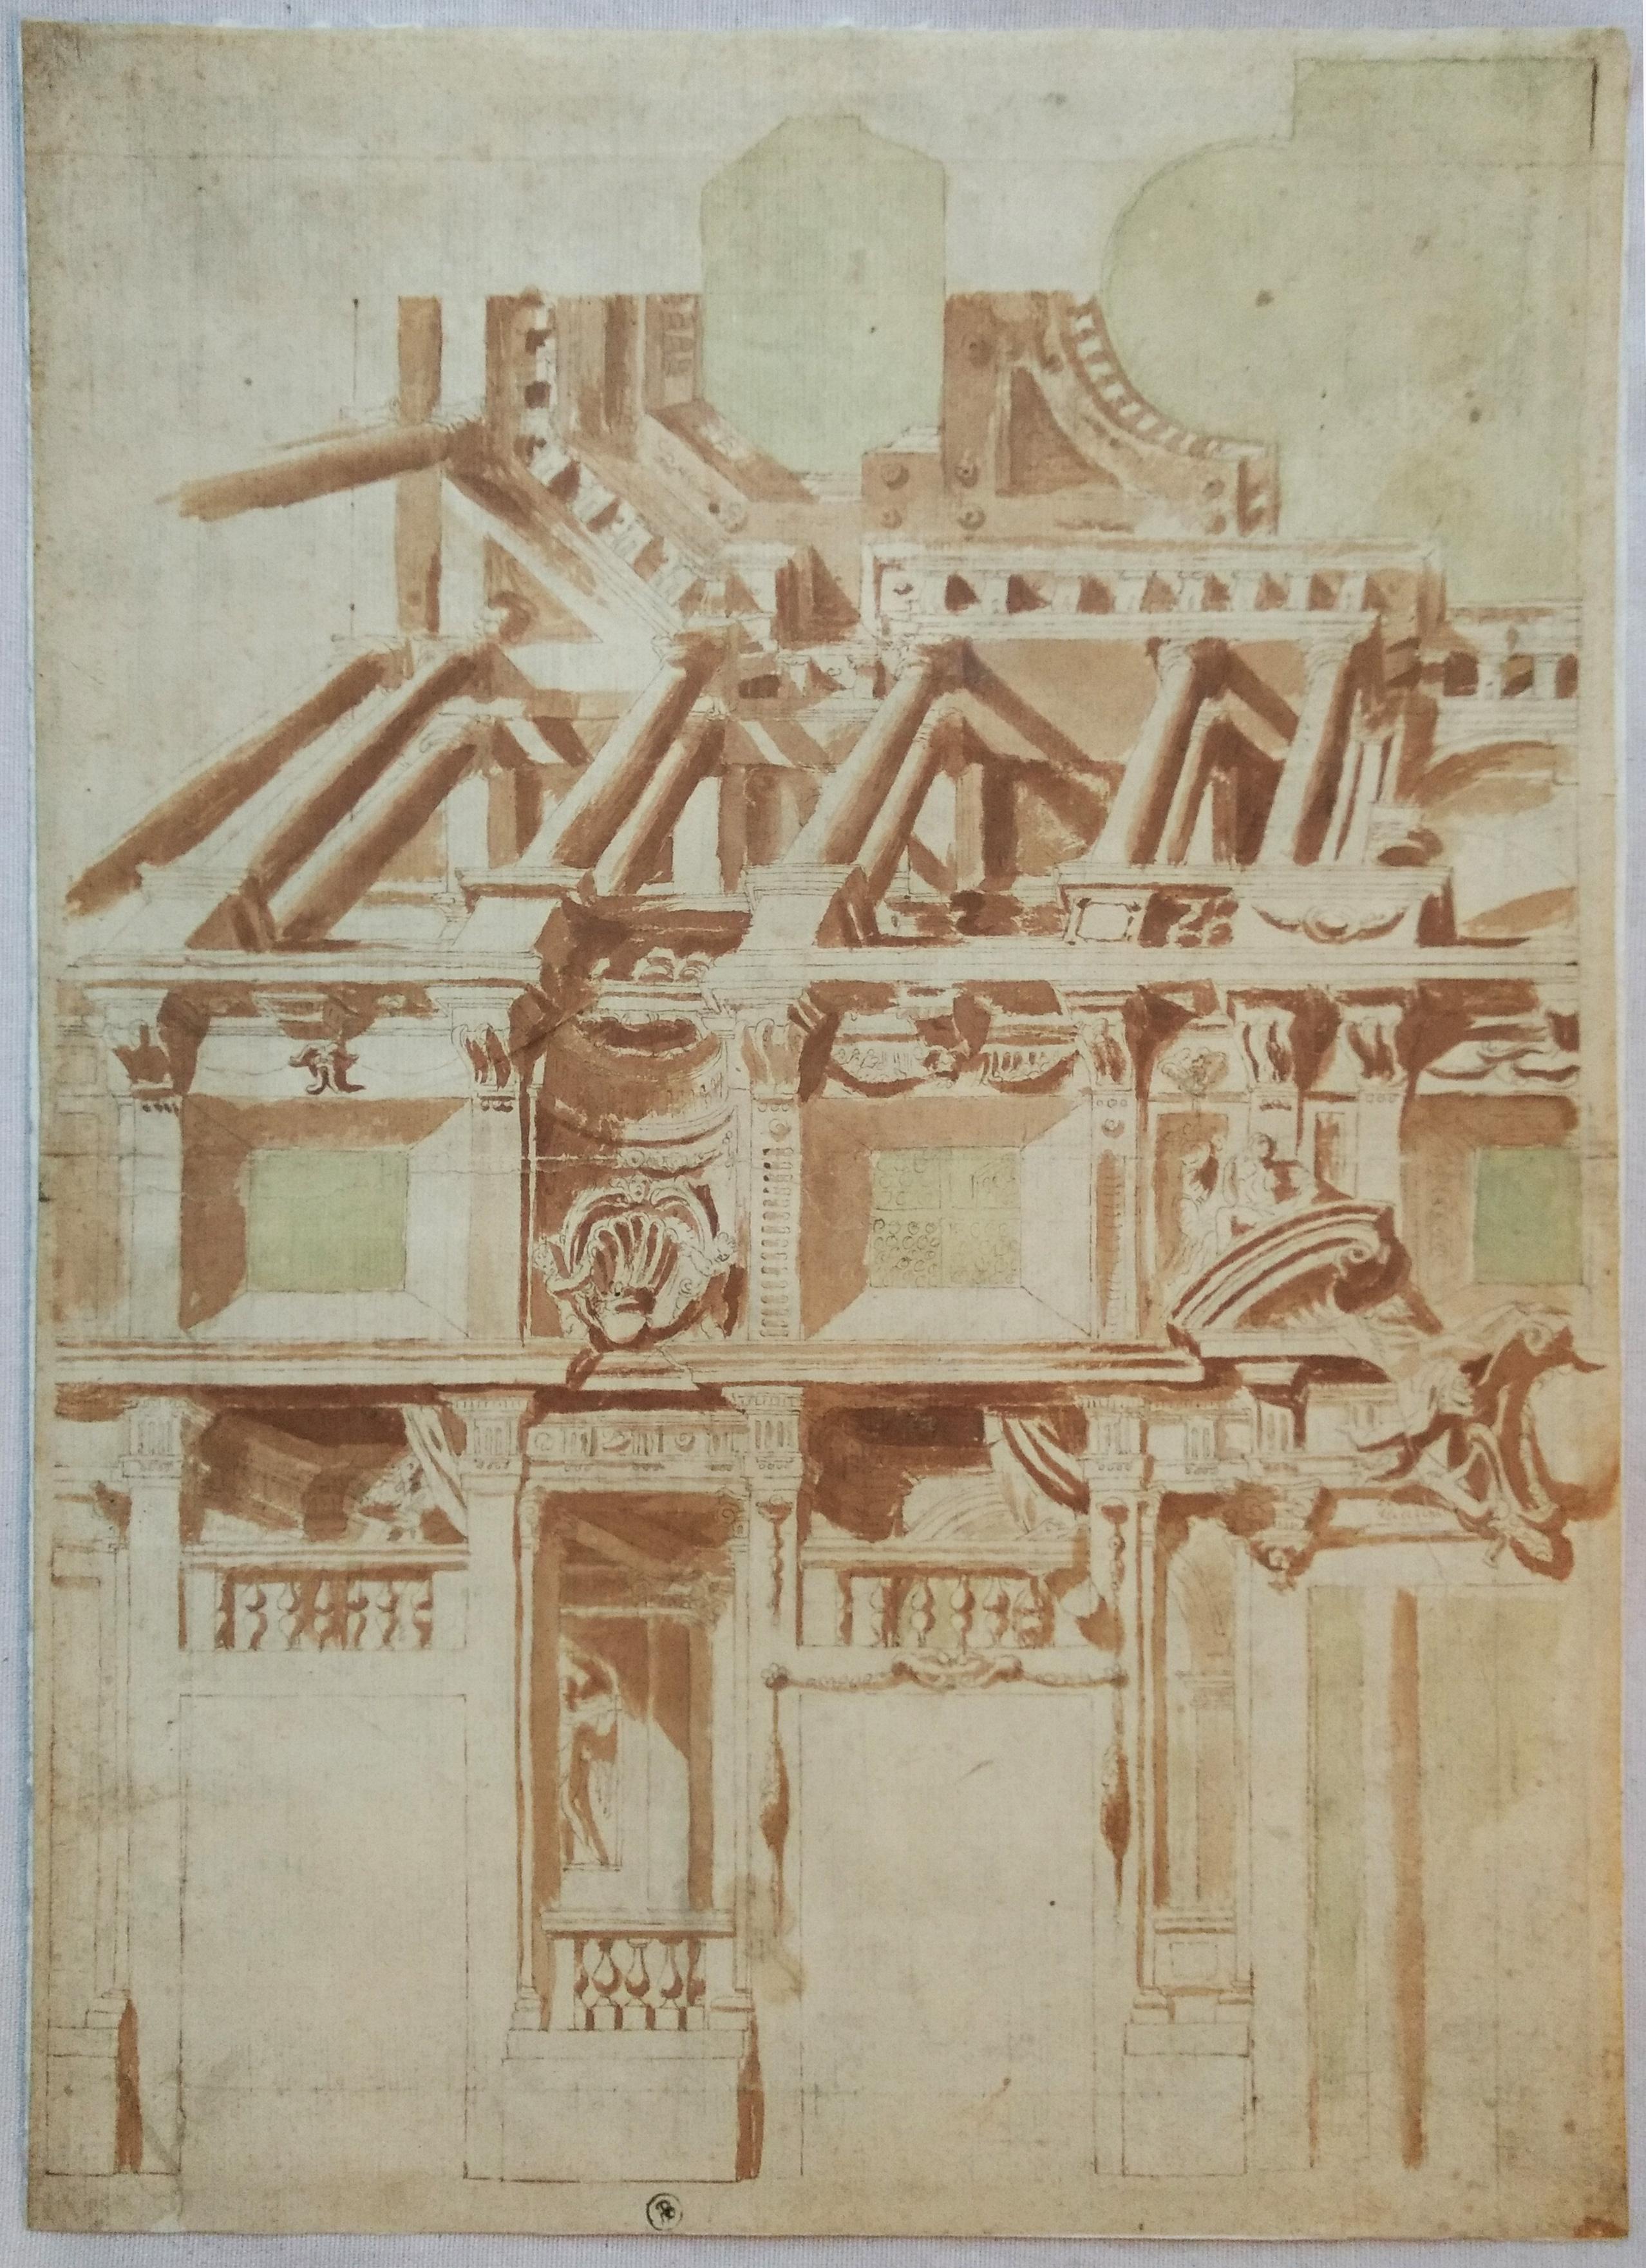 Unknown Interior Art - Quadratura decoration project, Italy circa 1640-1650